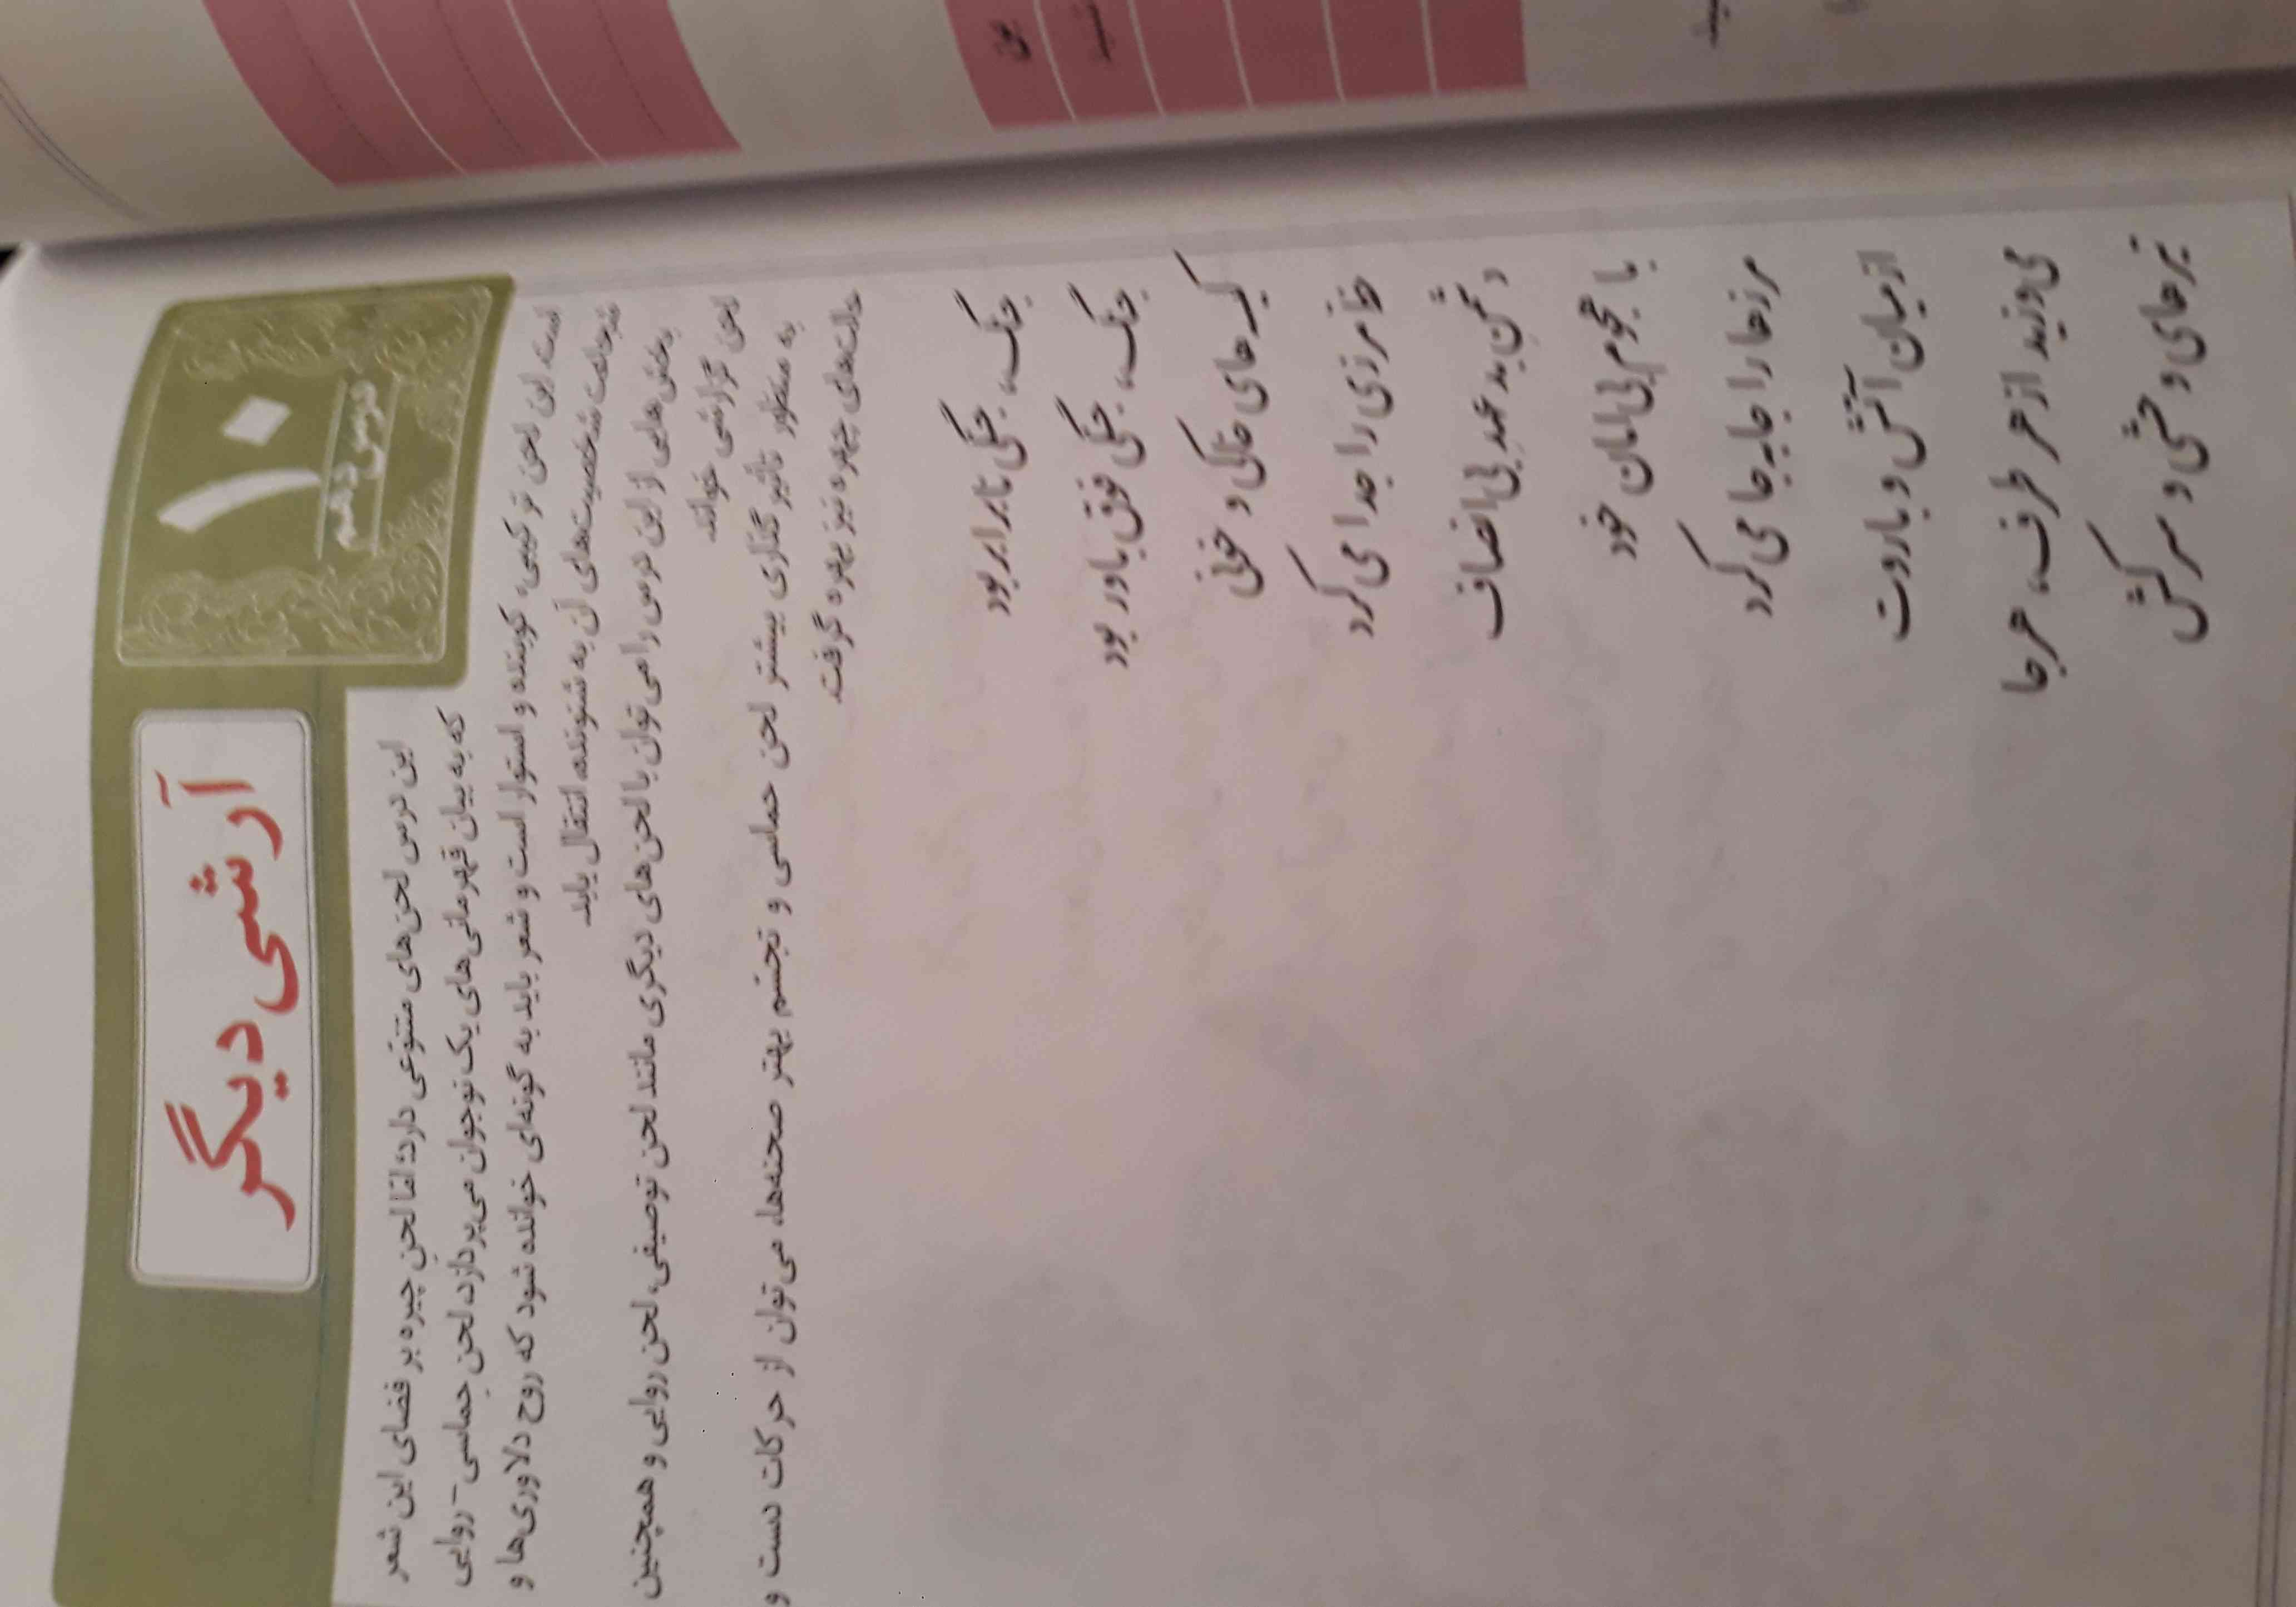 درس ۱۰ فارسی صفحه ۷۹ ارشی دیگر معنی شعر رو لطفا بهم بدید ممنون😊